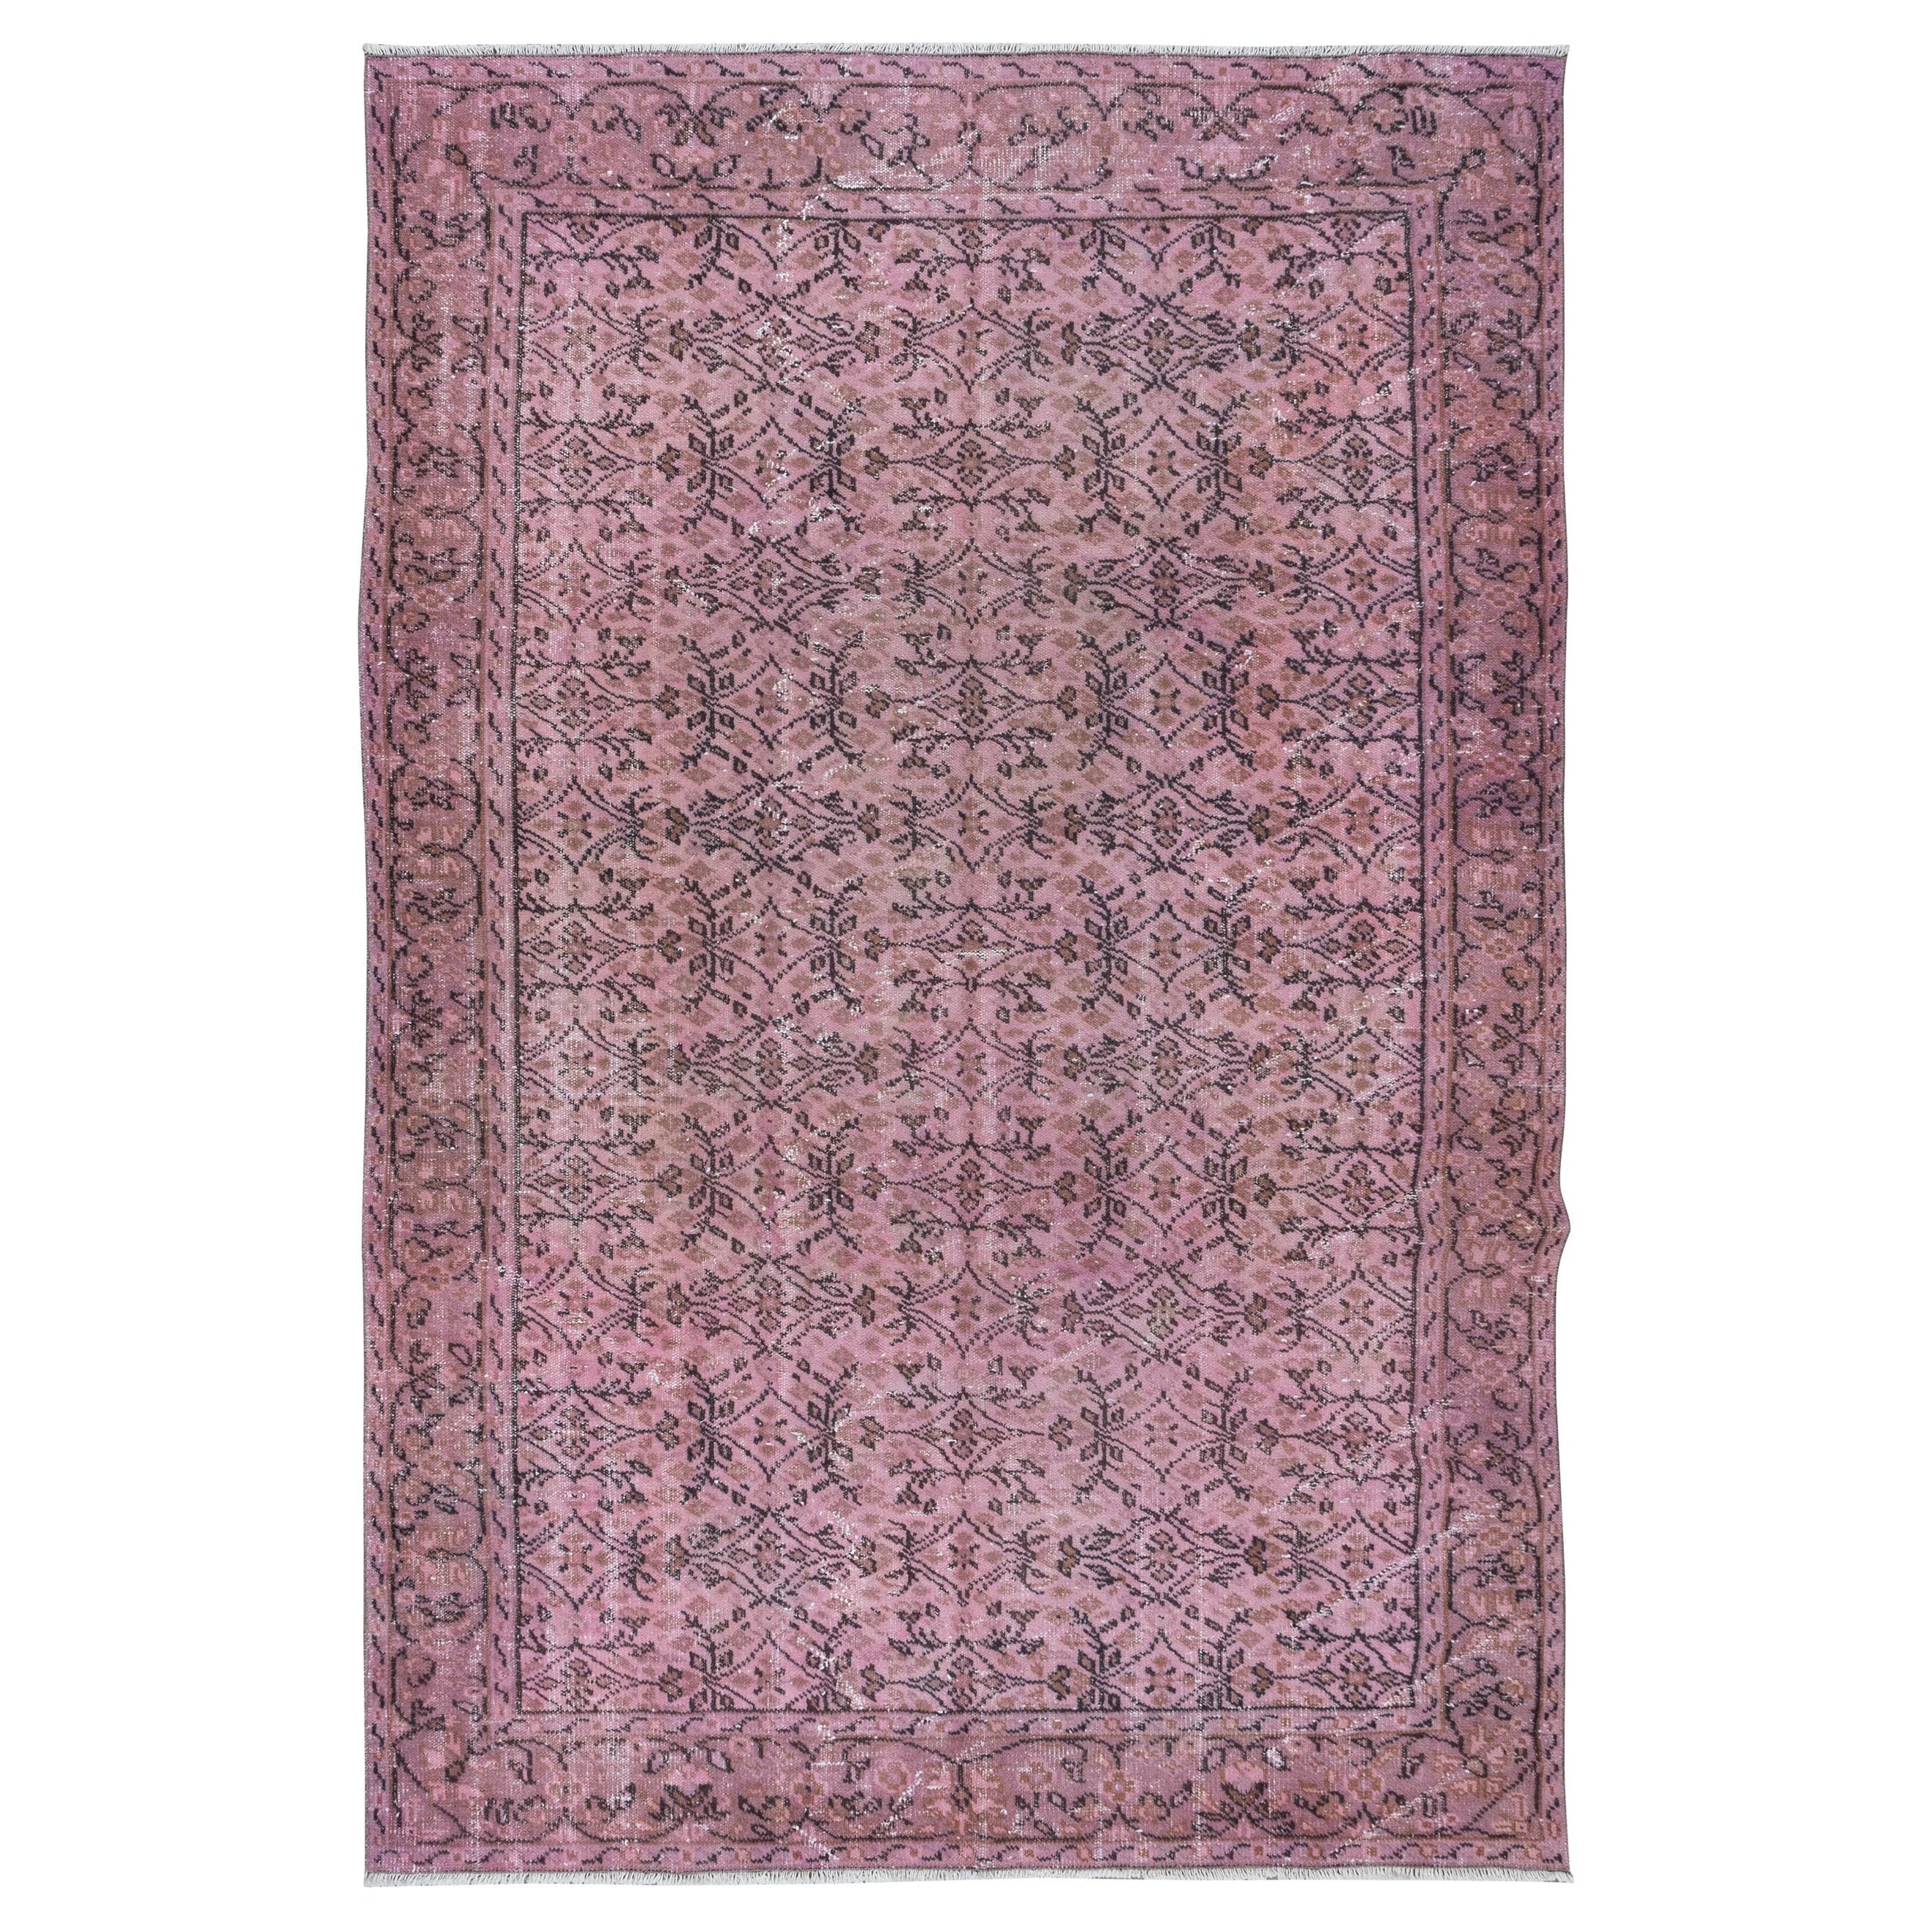 6.6x10 Ft Handgefertigter Bodenteppich mit Blumenmuster in Rosa, moderner türkischer Teppich